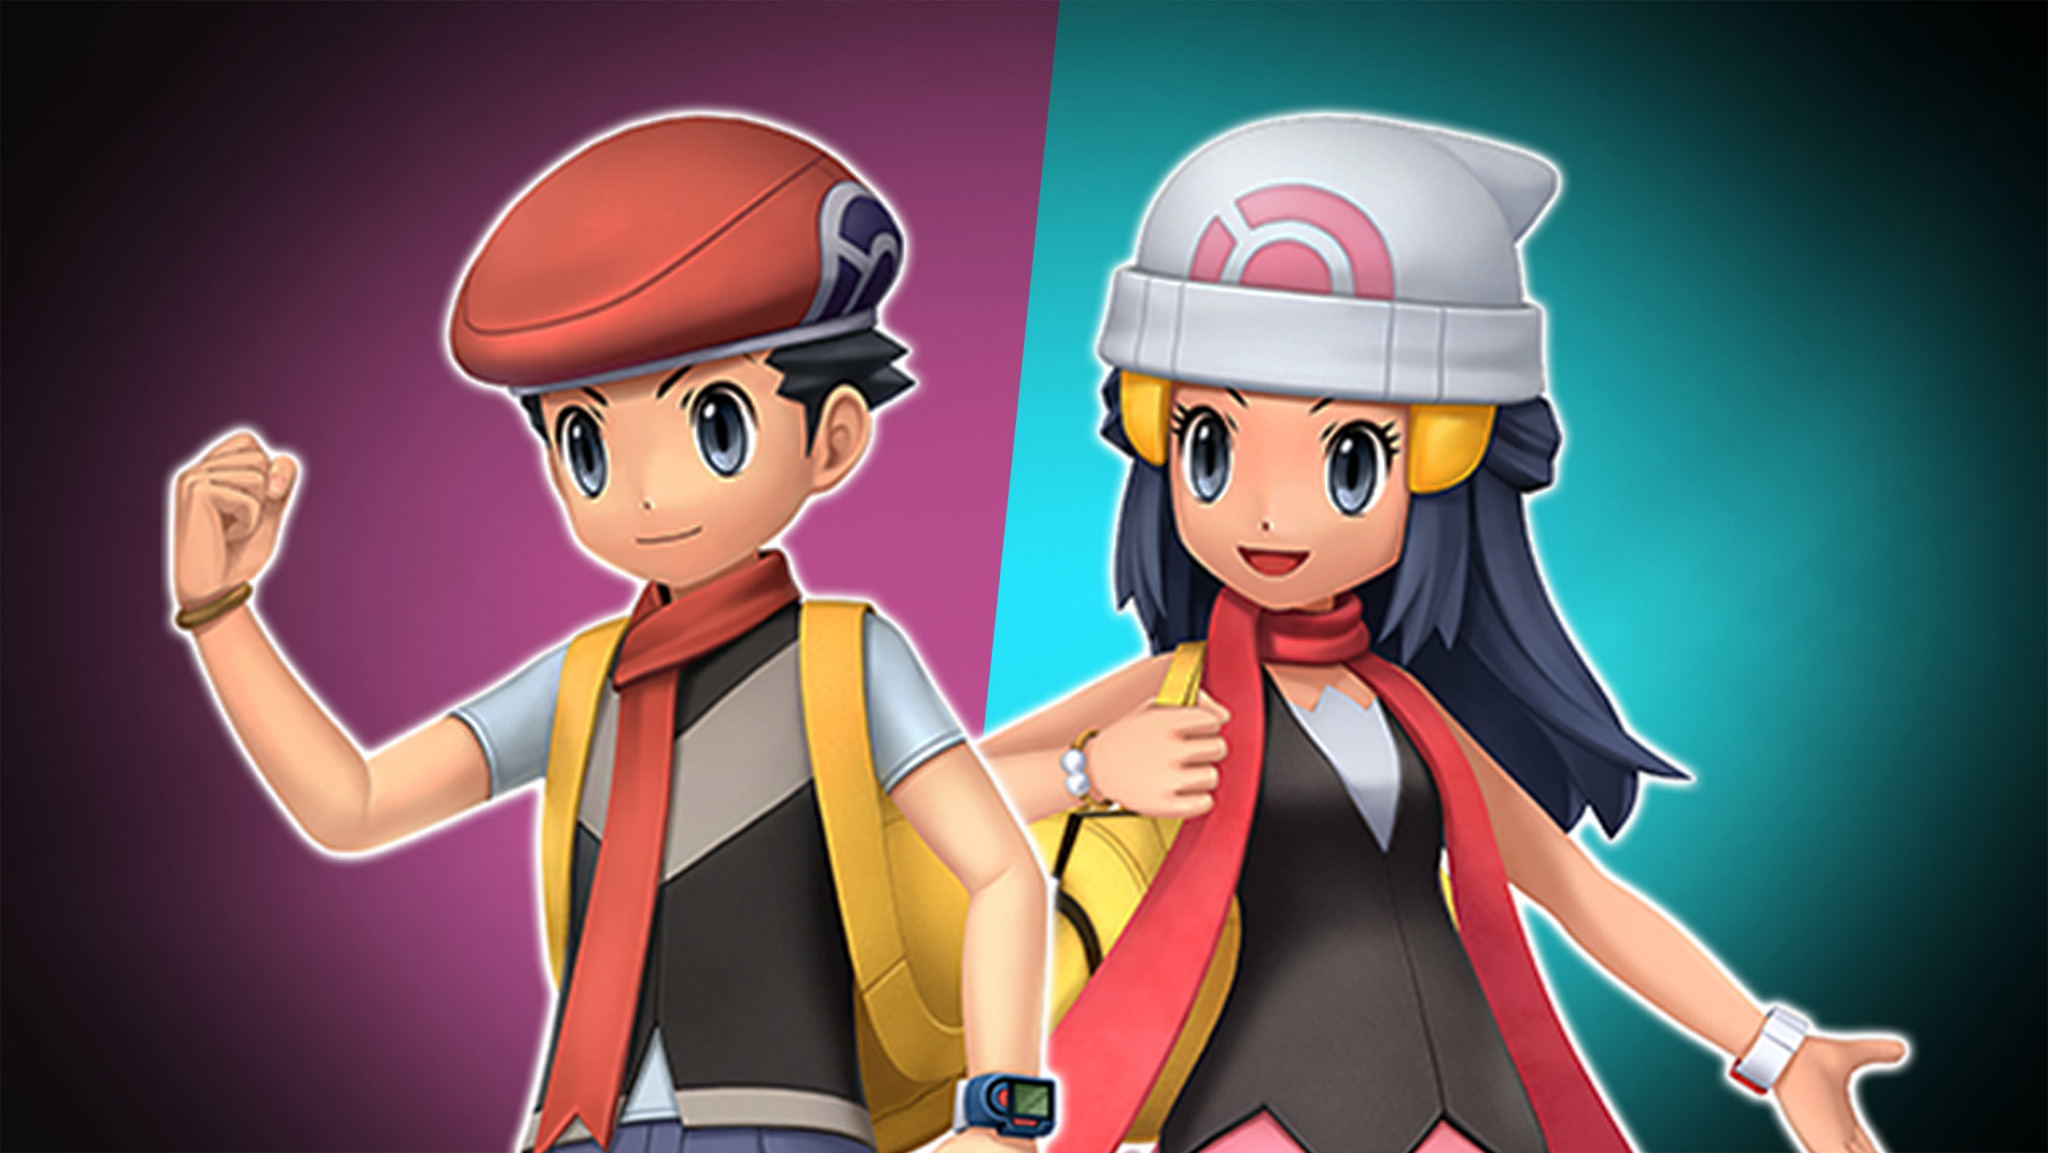 Pokémon Diamond and Pearl's Dawn to Appear in Pokémon Journeys